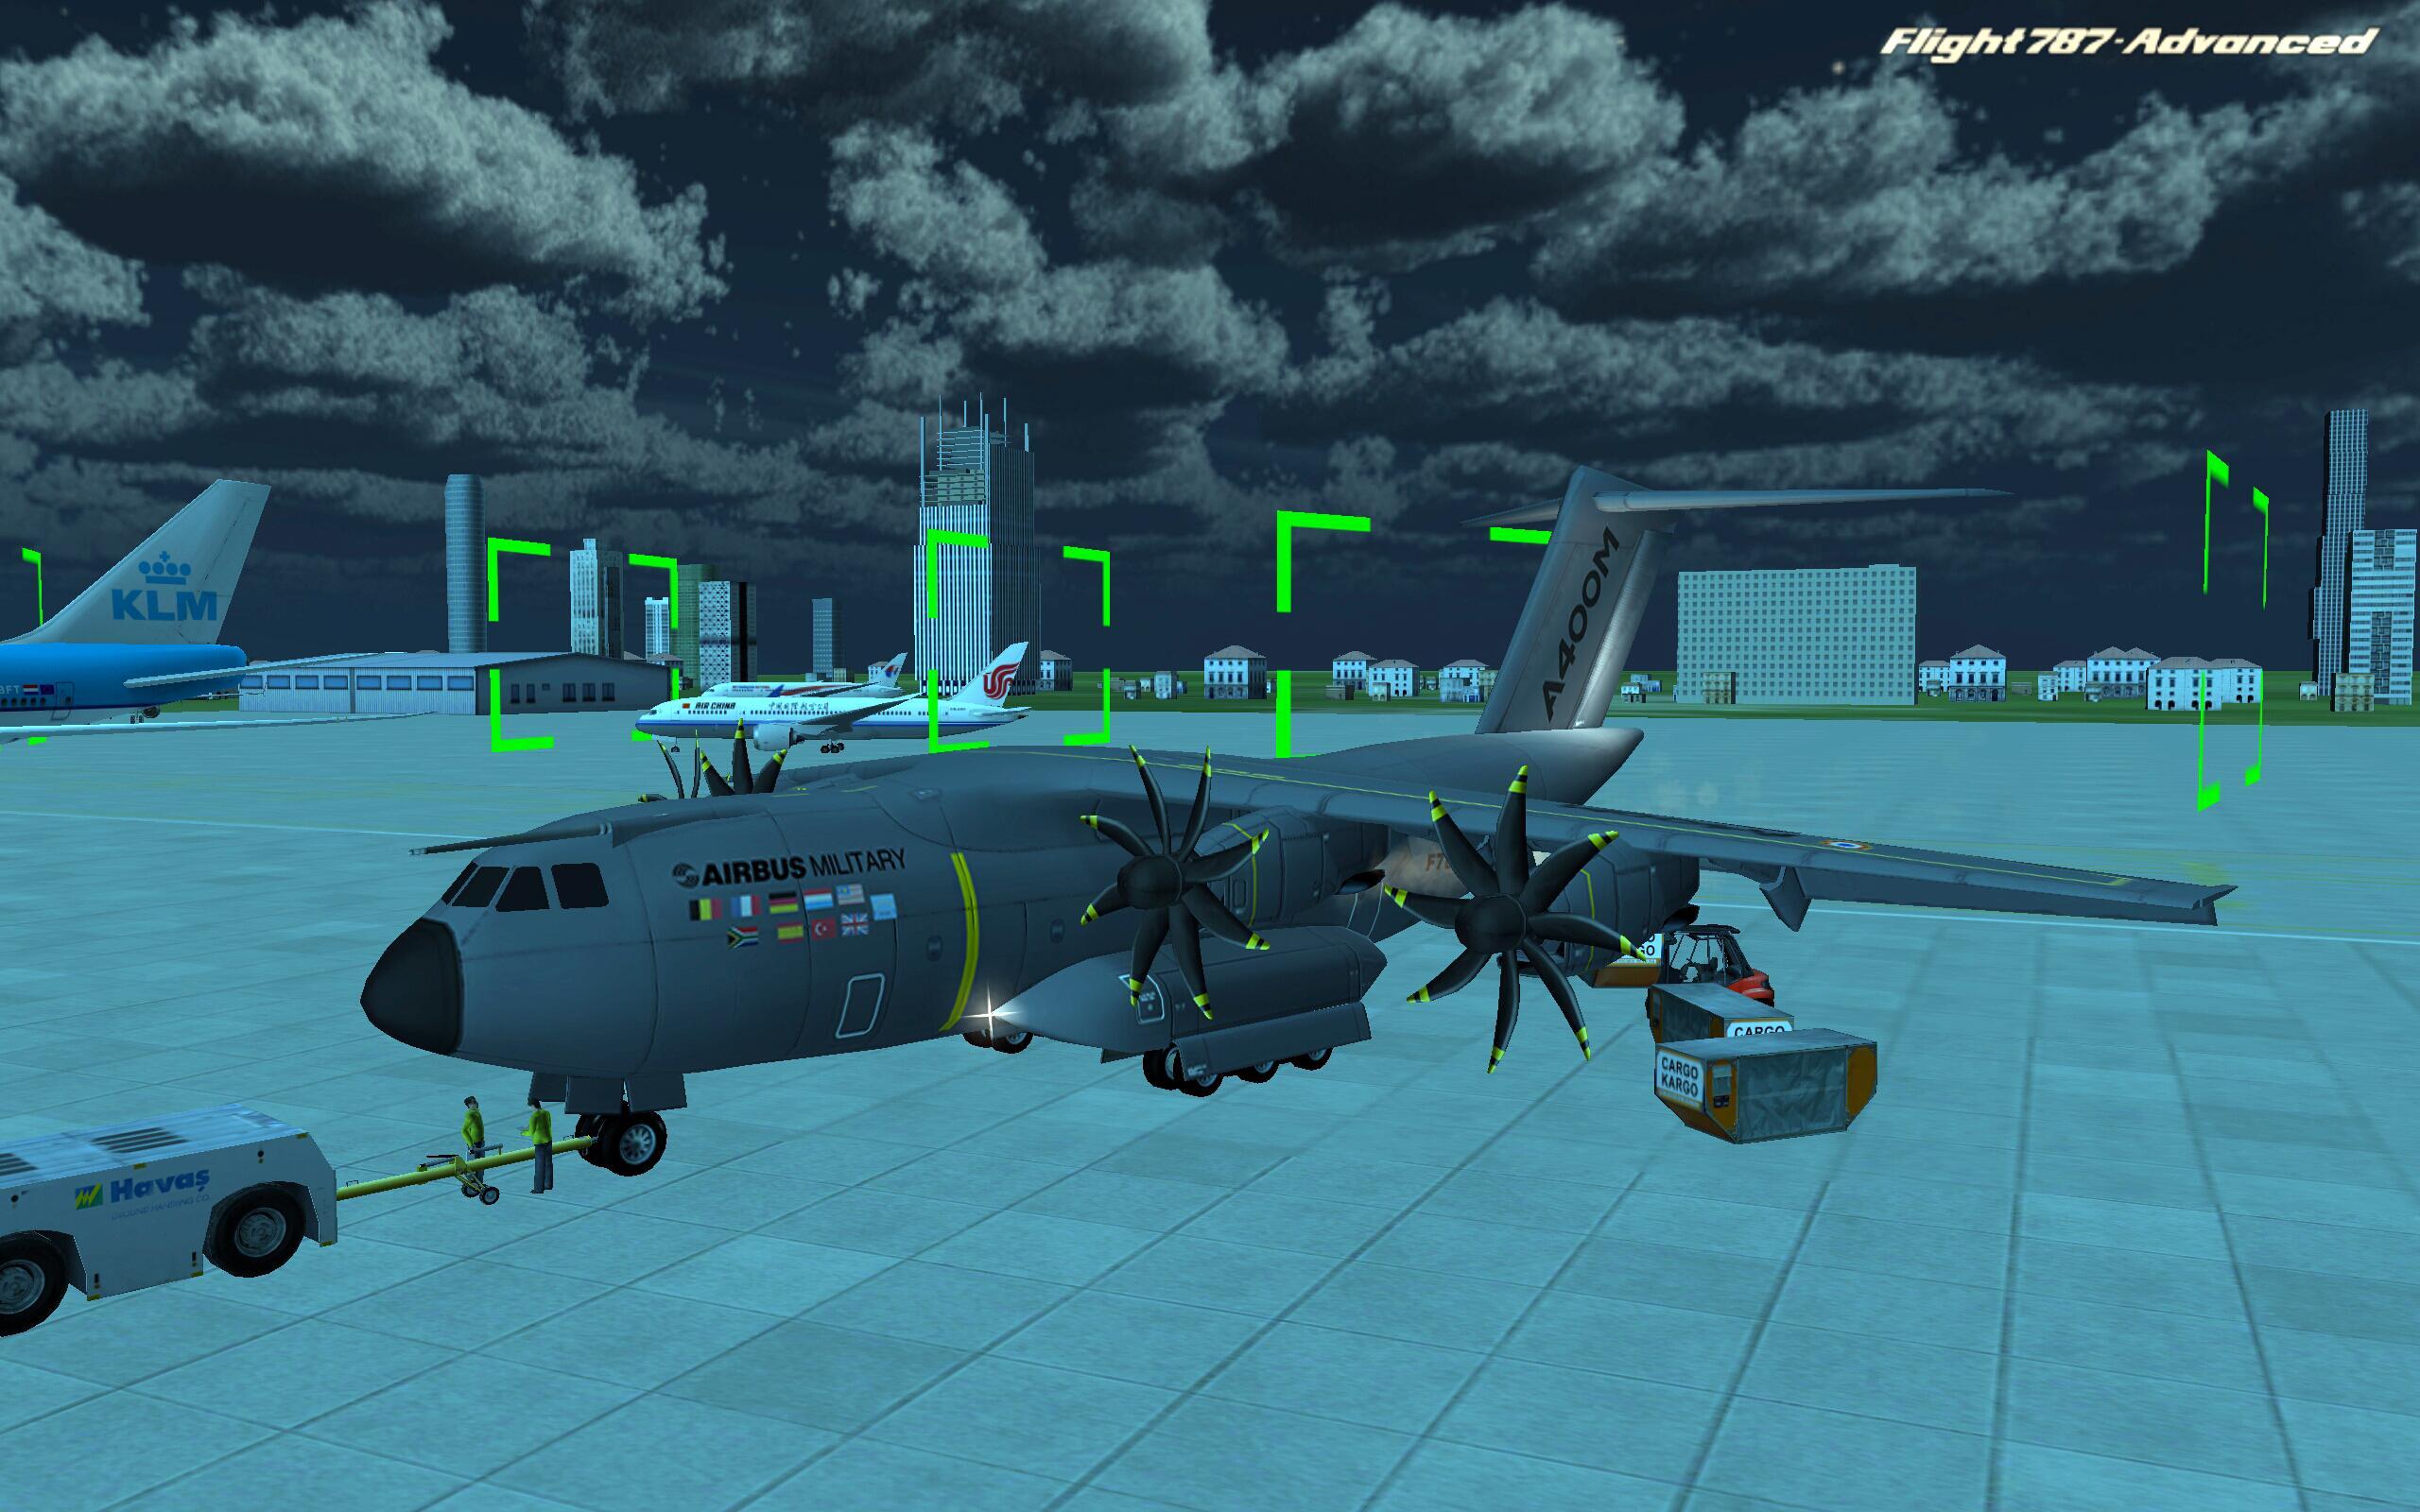 Много игр про самолет. Flight 787 - Advanced. Игры про самолеты. Симулятор военного самолета. Игры про самолёты на андроид.